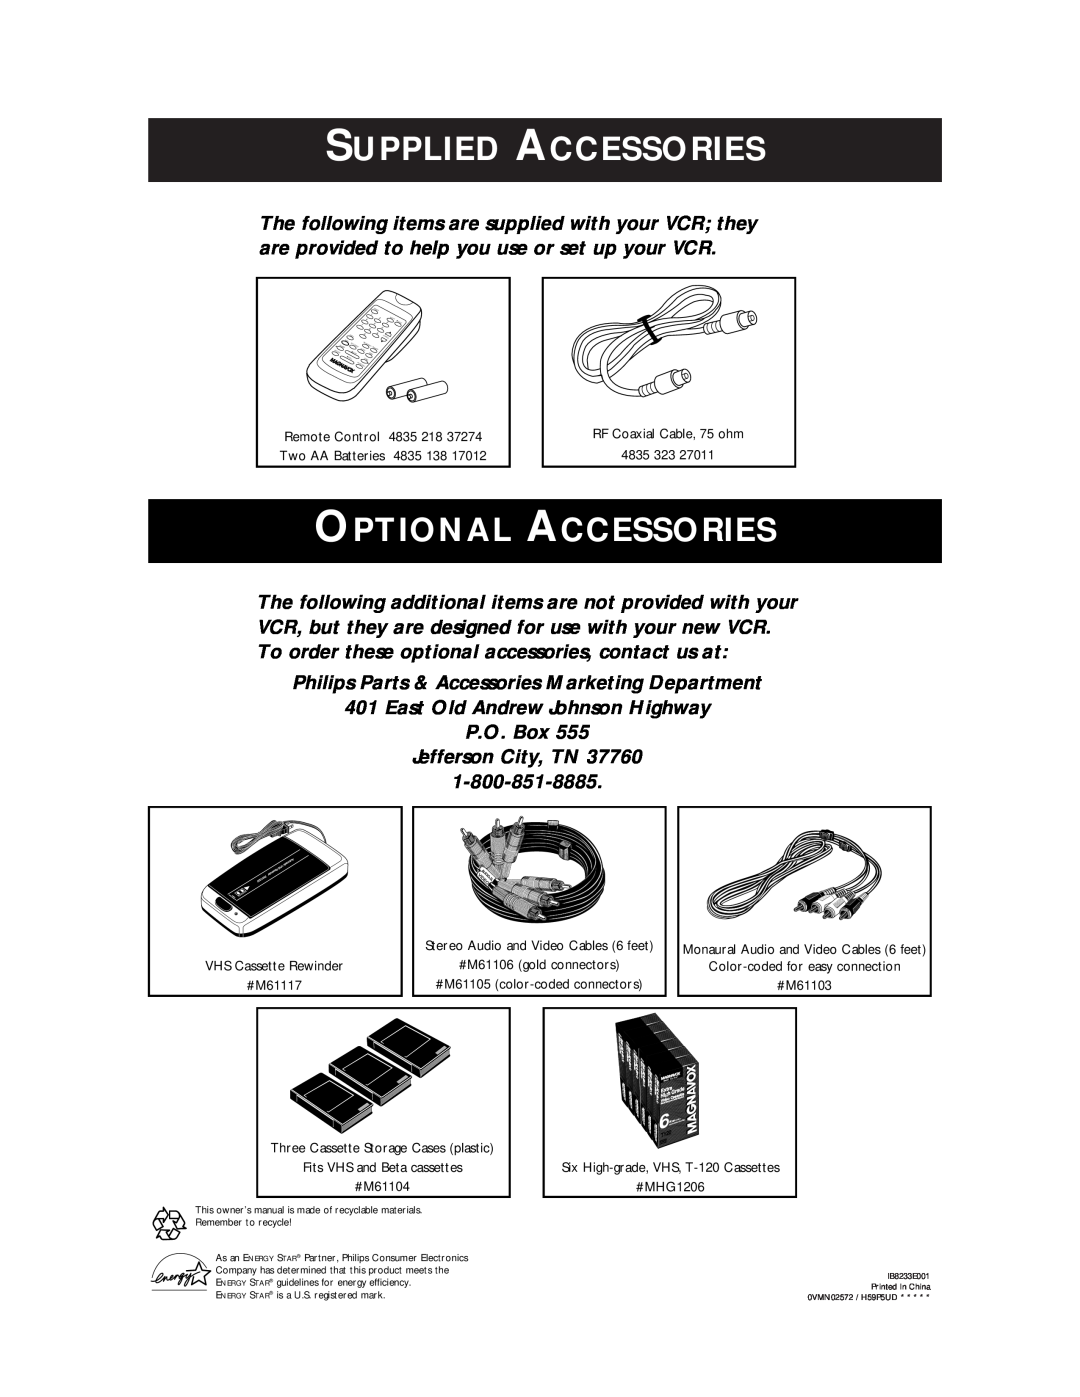 Magnavox VR401BMX, VR601BMX Supplied Accessories, Optional Accessories, Philips Parts & Accessories Marketing Department 